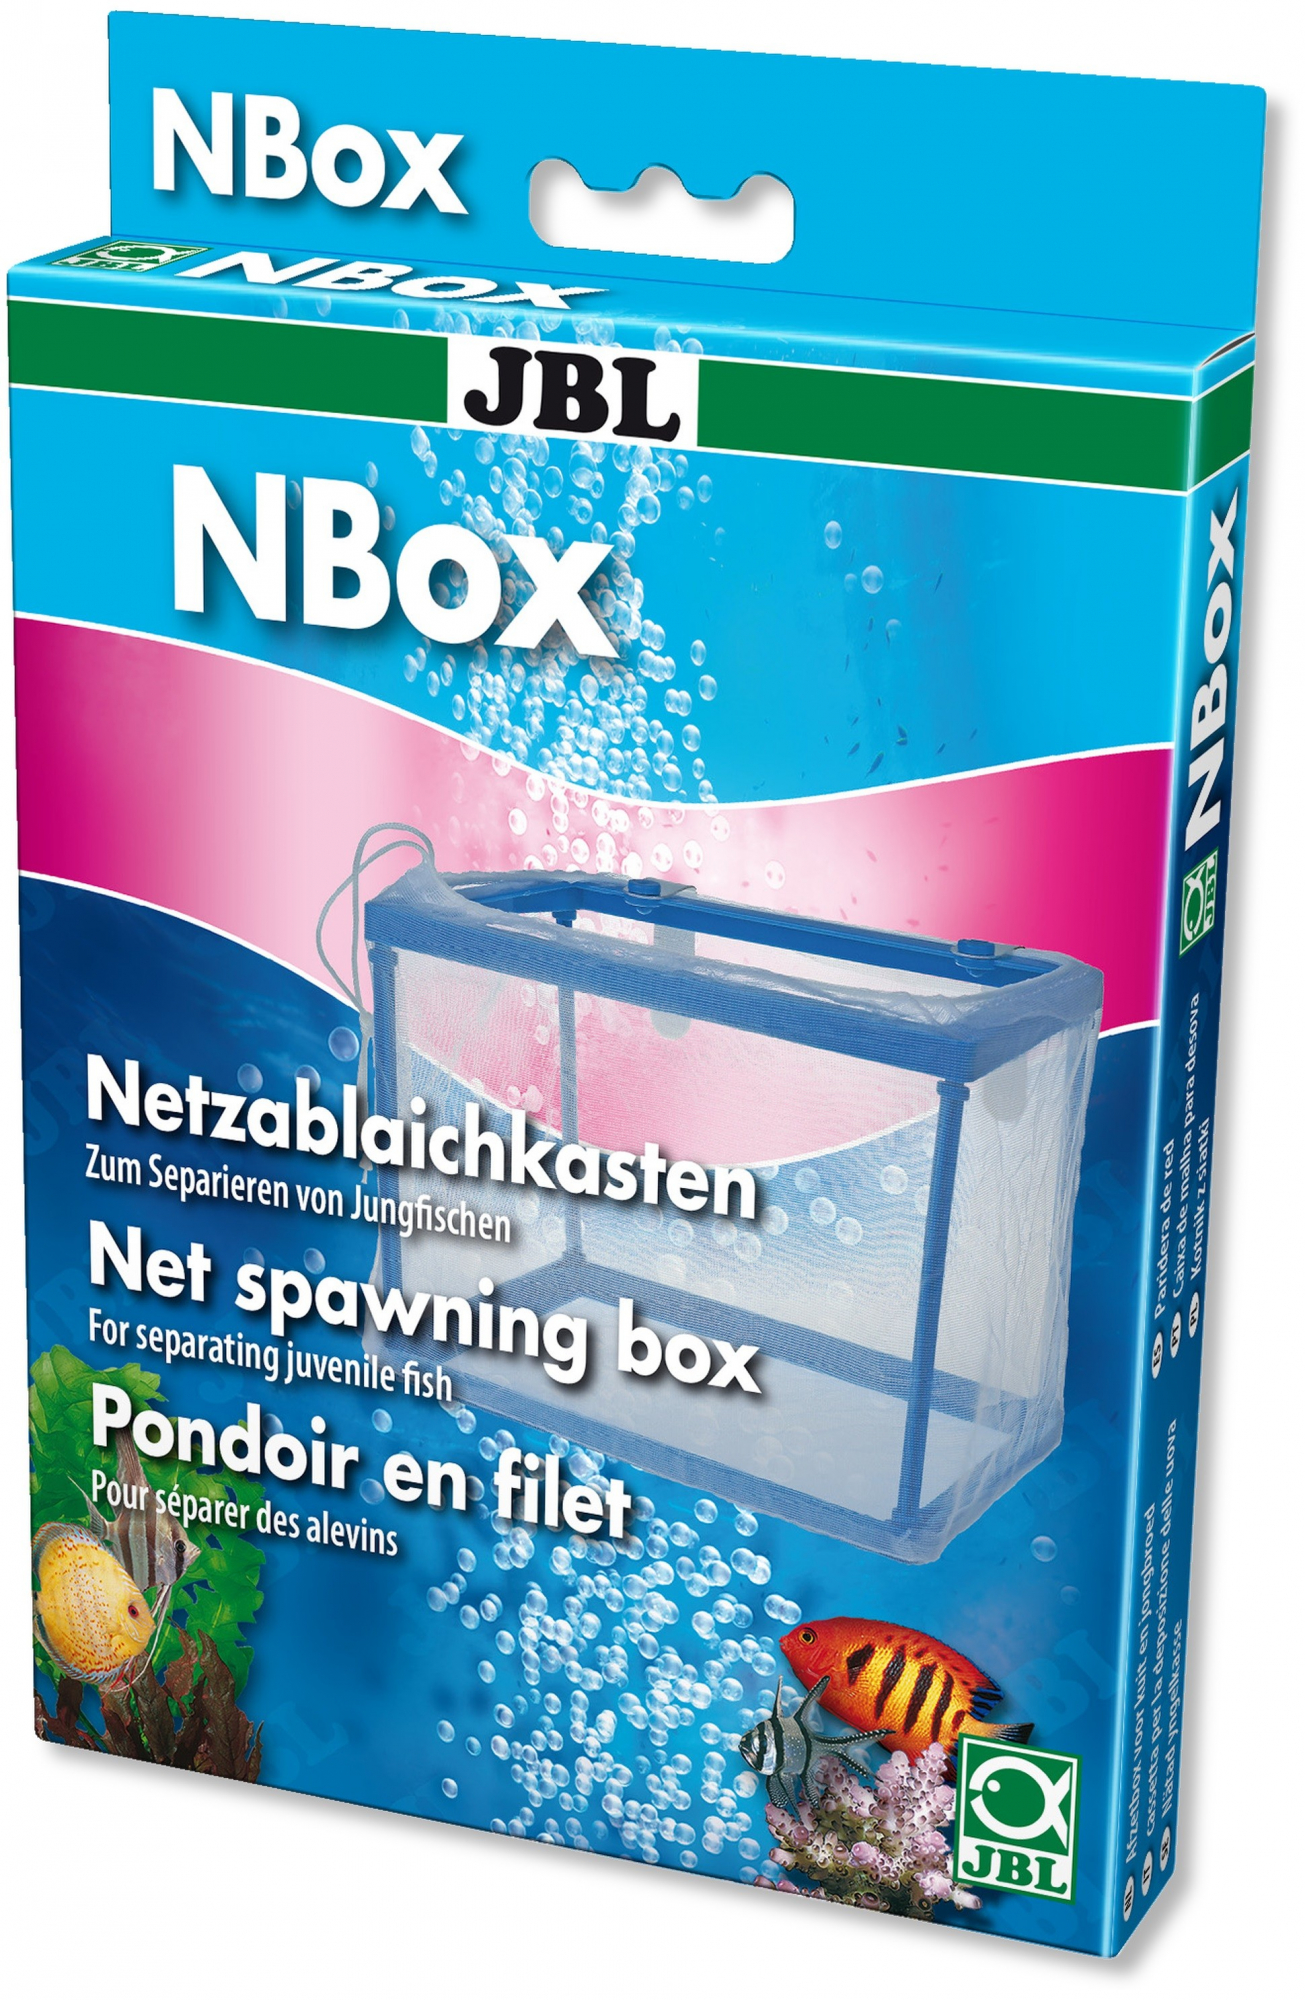 JBL Paridera de red Nbox